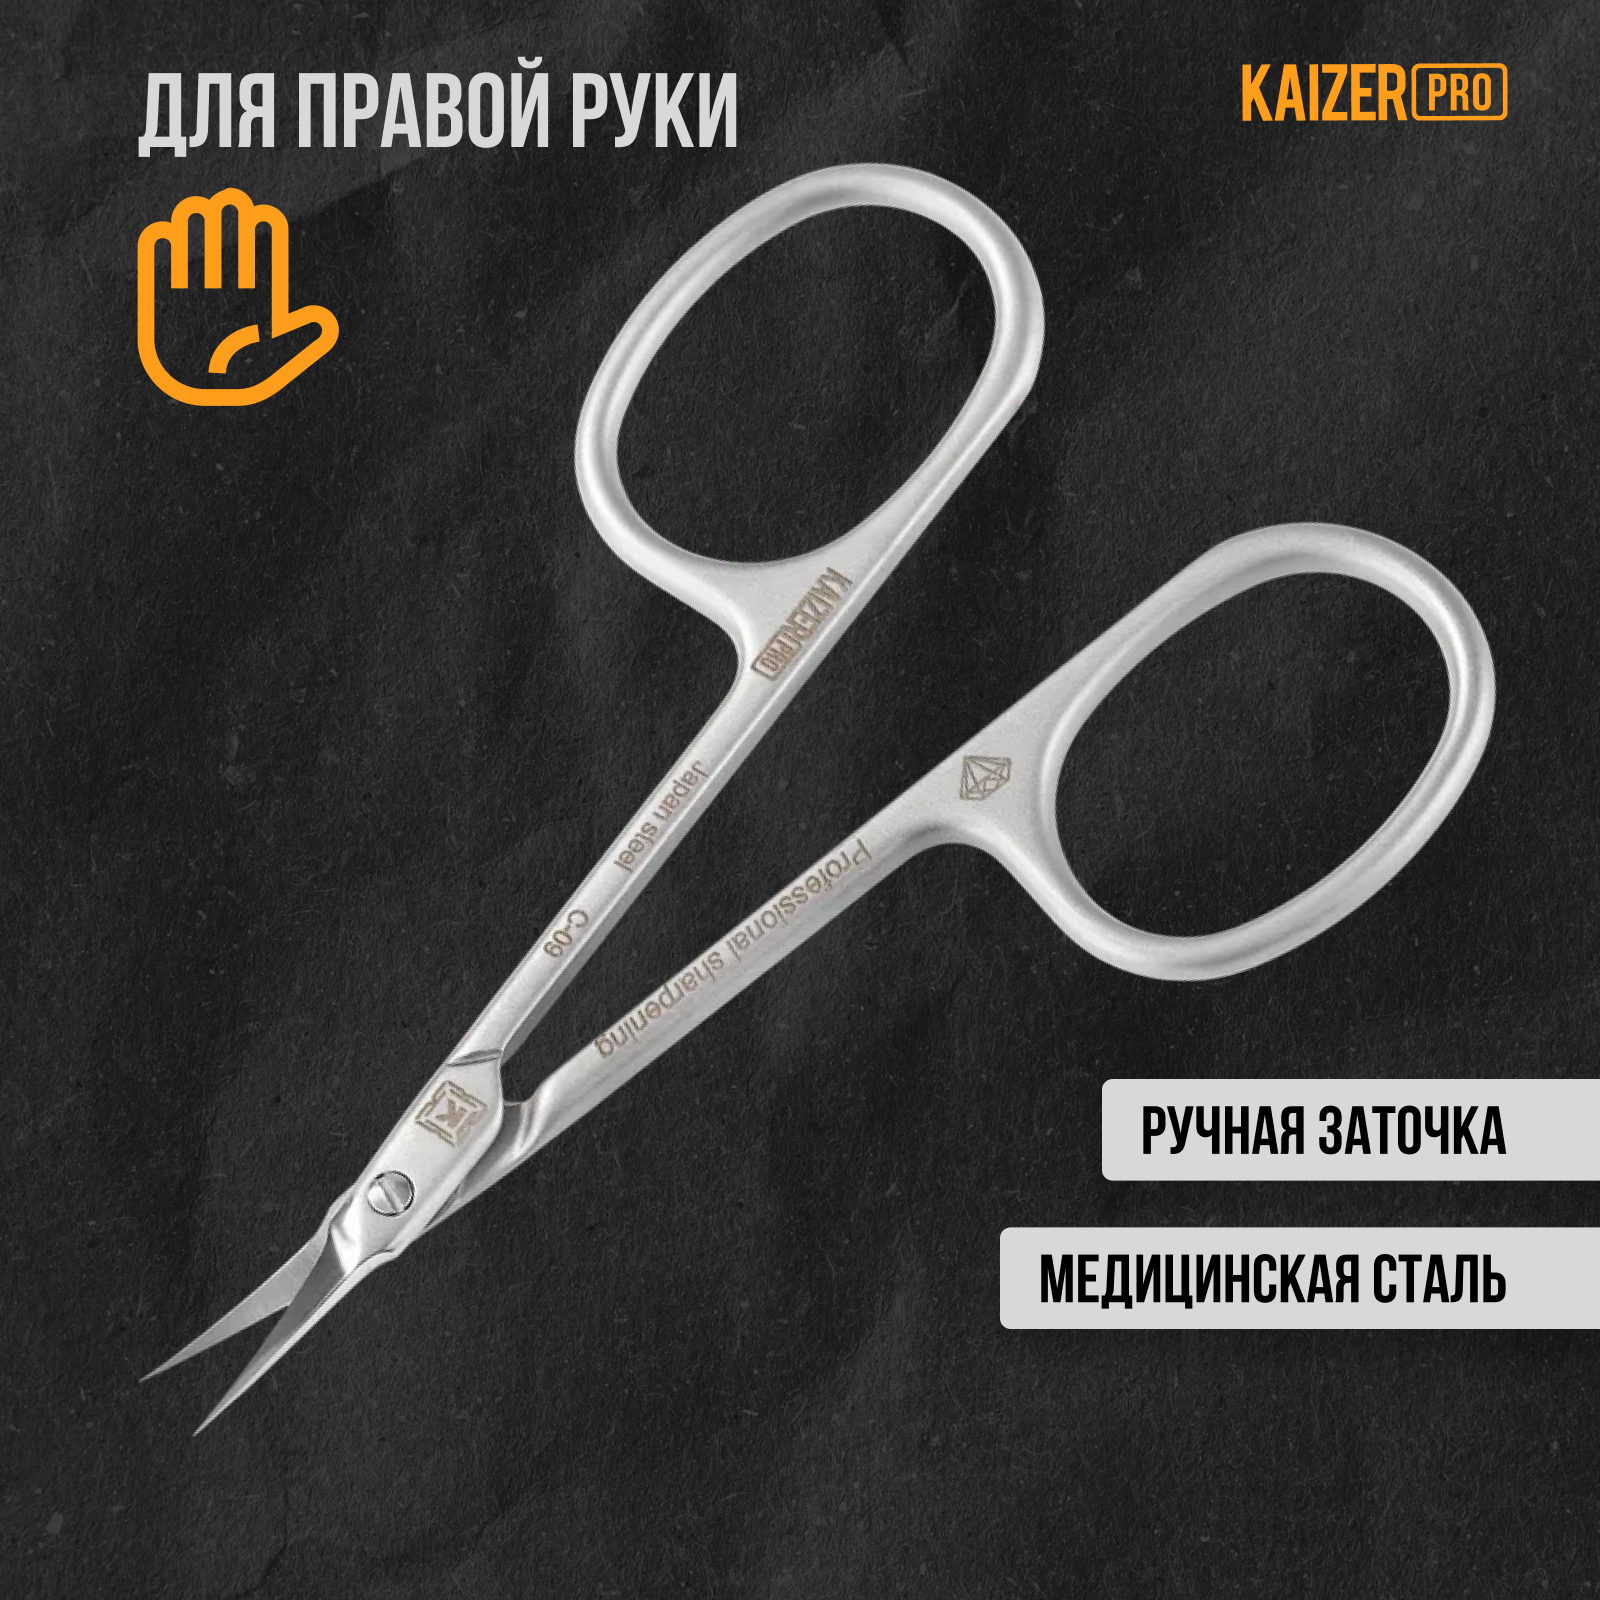 Ножницы маникюрные Kaizer pro для кутикулы профессиональная заточка 90 мм сатин хром lei ножницы маникюрные закруглённые для кутикулы с укороченной режущей частью